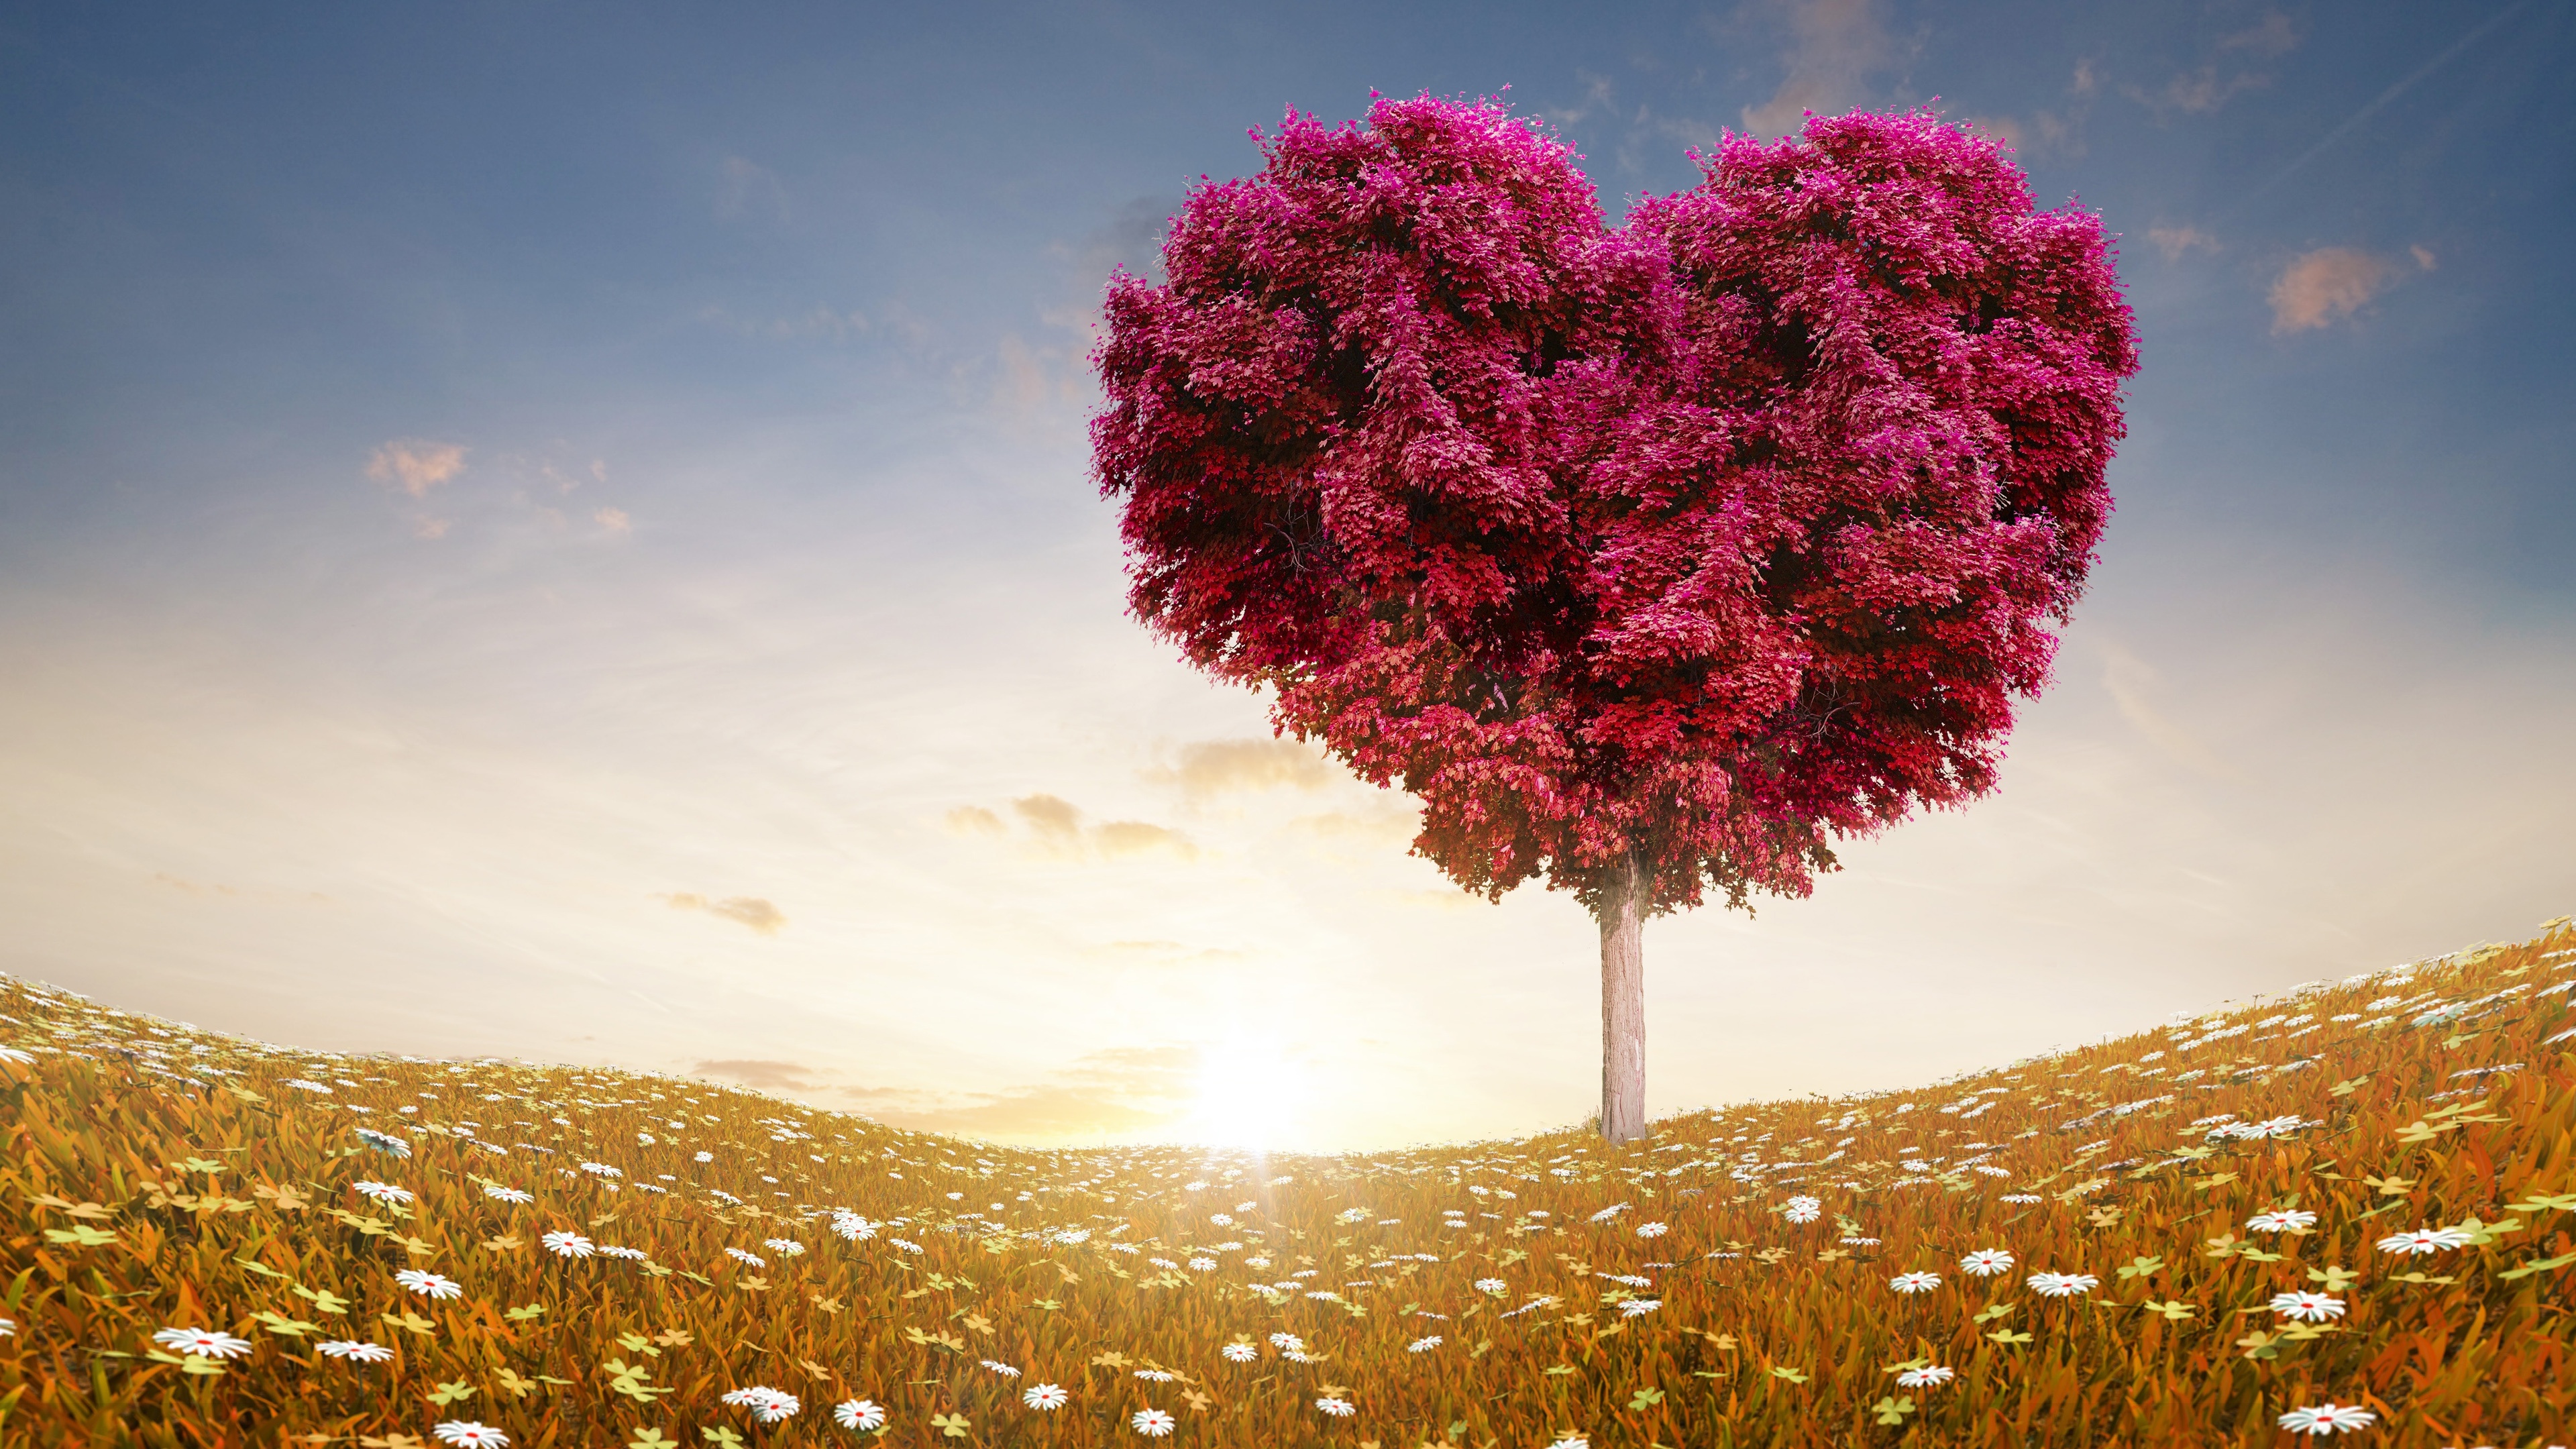 Love Heart Tree Fields Wallpapers in jpg format for free download